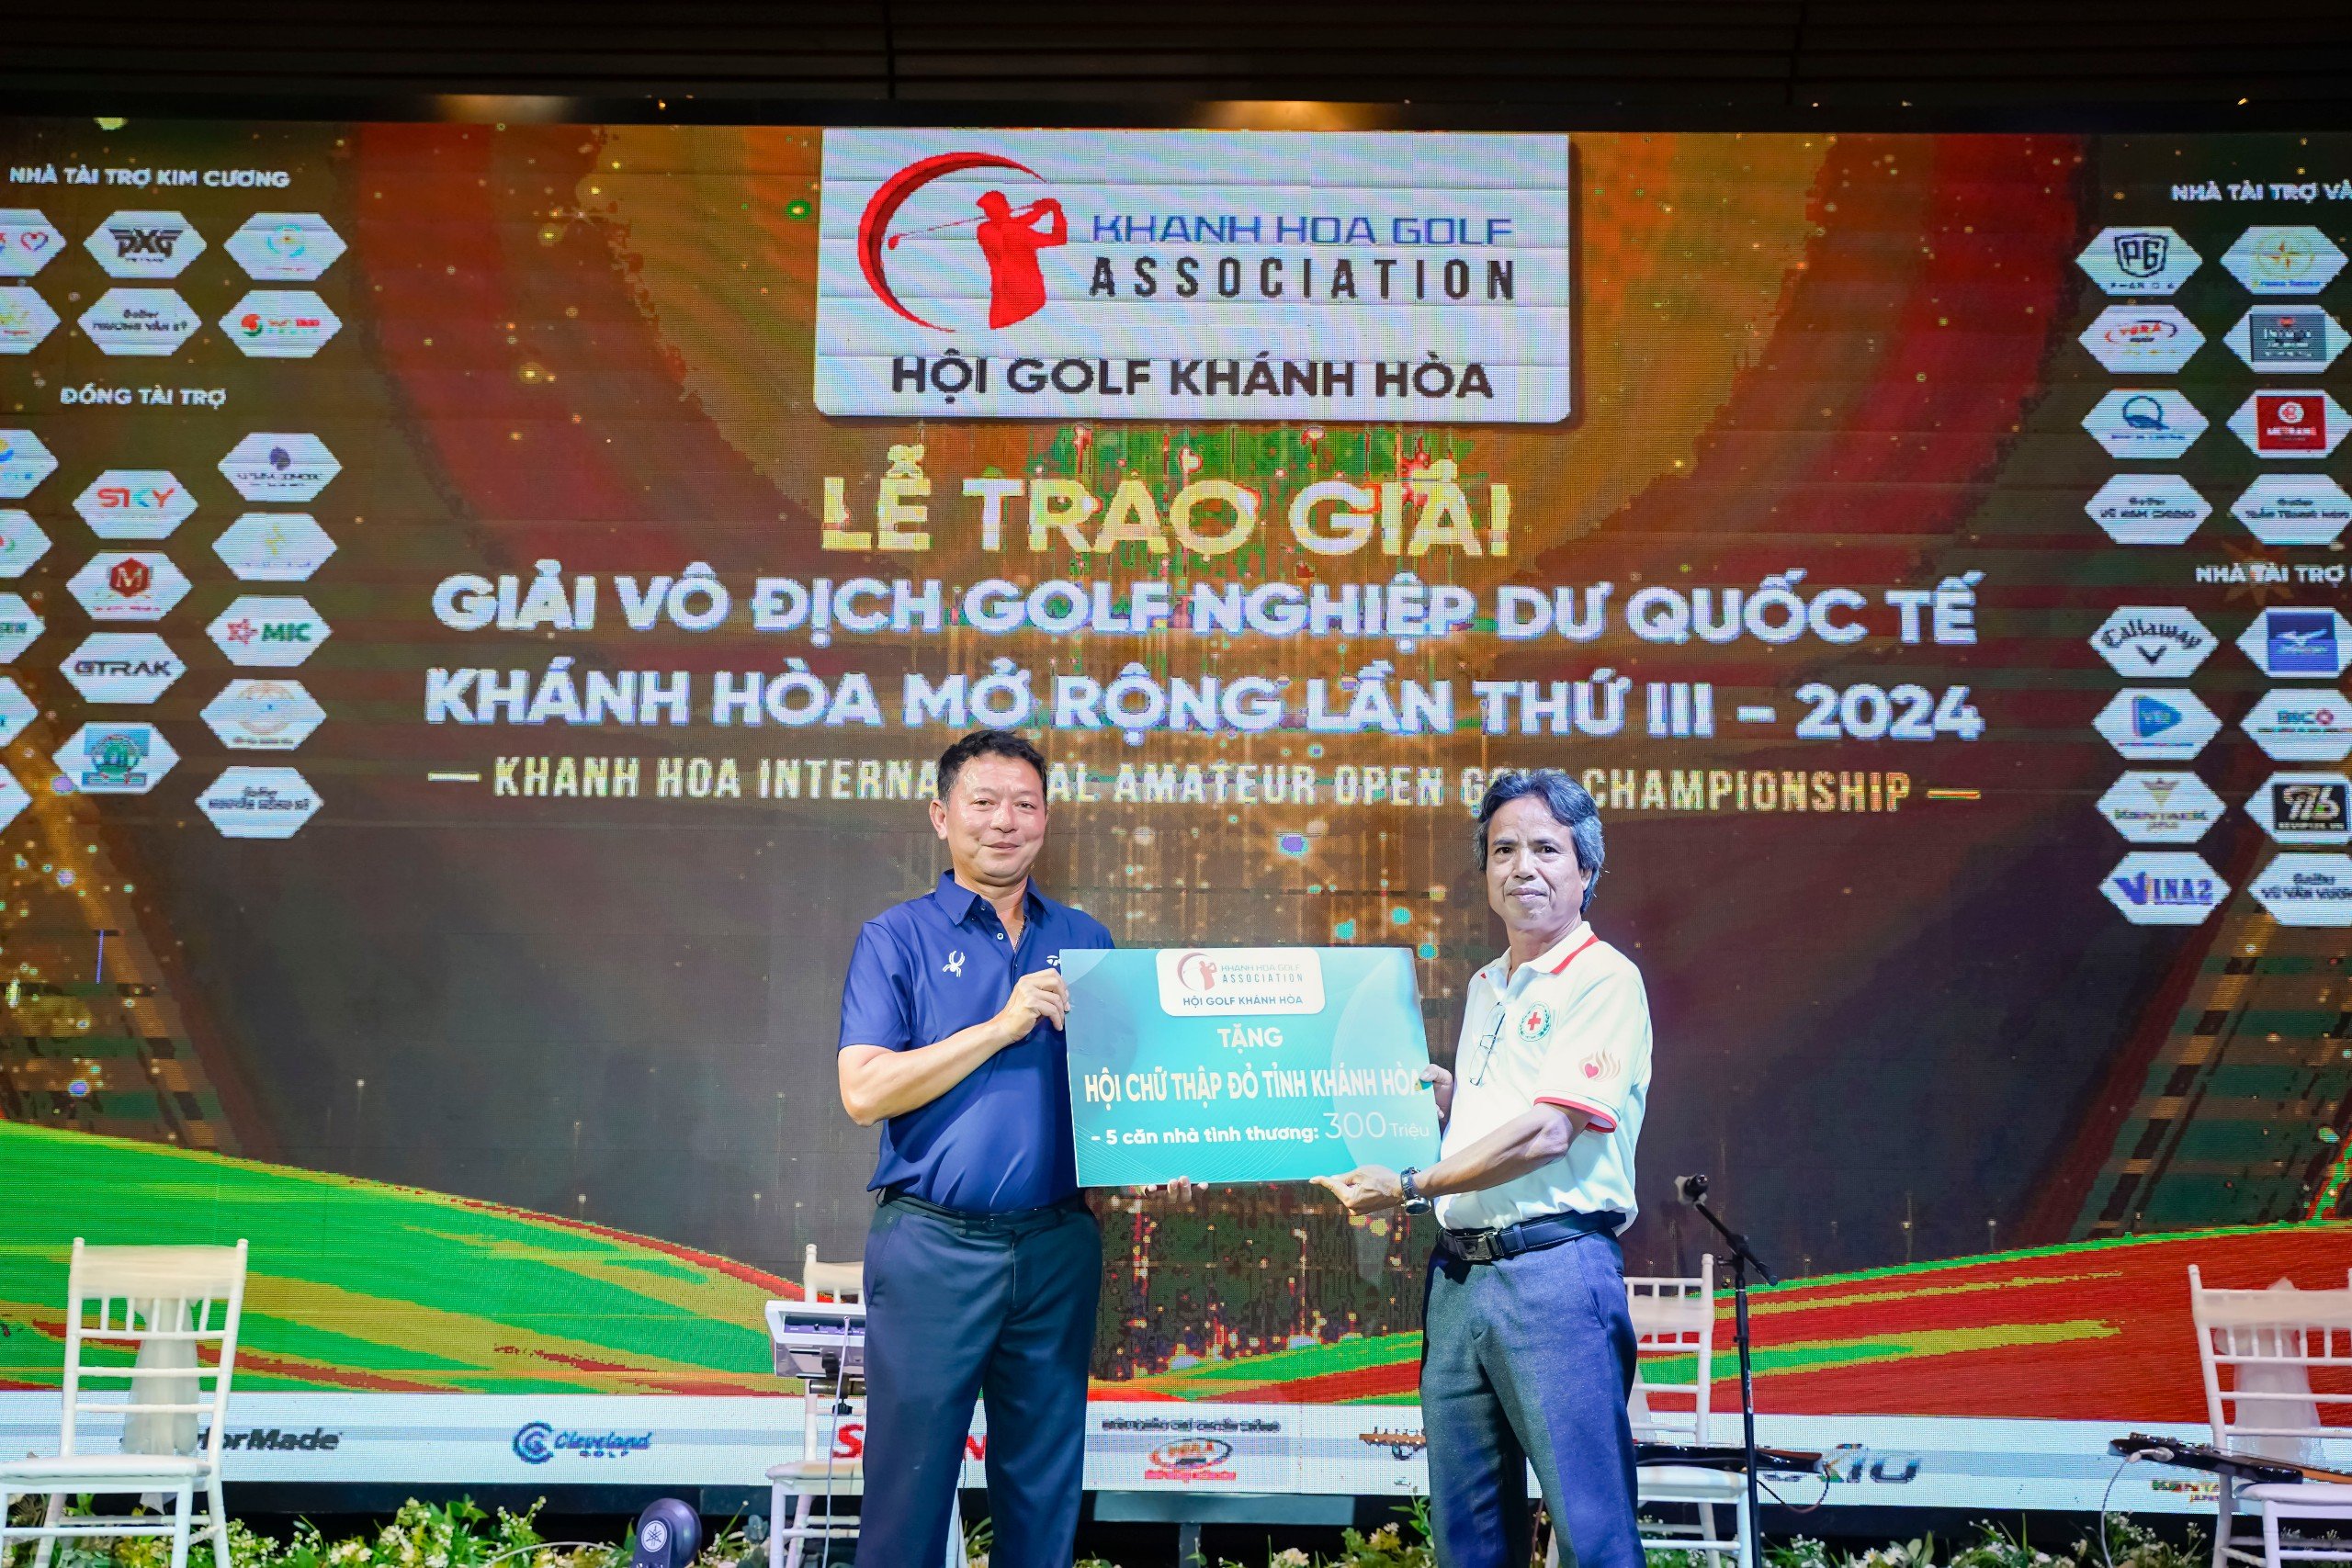 Đánh bại hơn 200 golfer, Âu Văn Sơn vô địch giải golf Khánh Hòa - 2